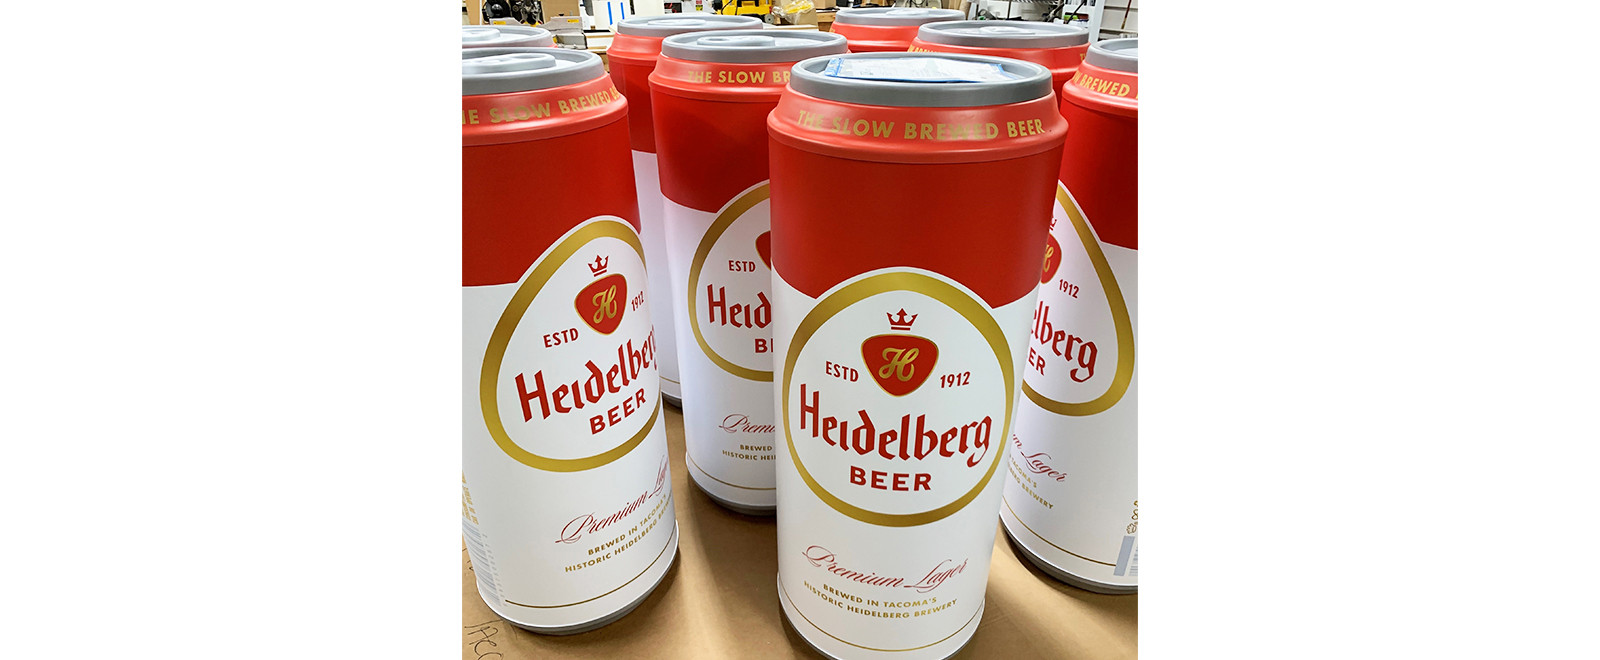 Heidelberg beer cans